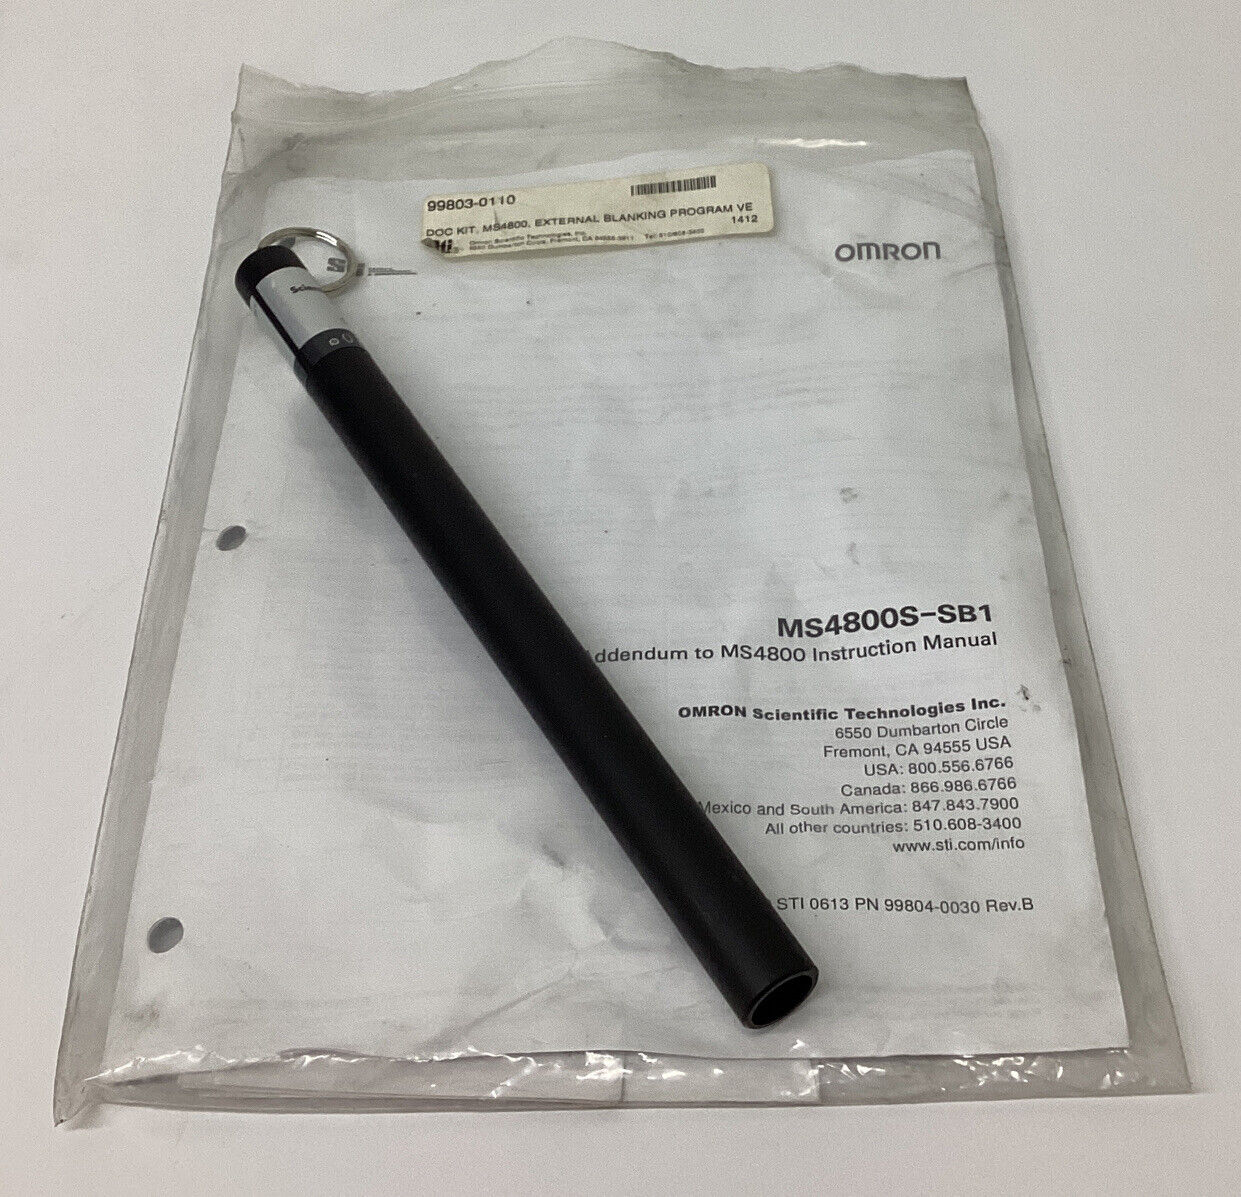 Omron STI 99803-0110 External Blanking Kit MS4800 (GR214) - 0